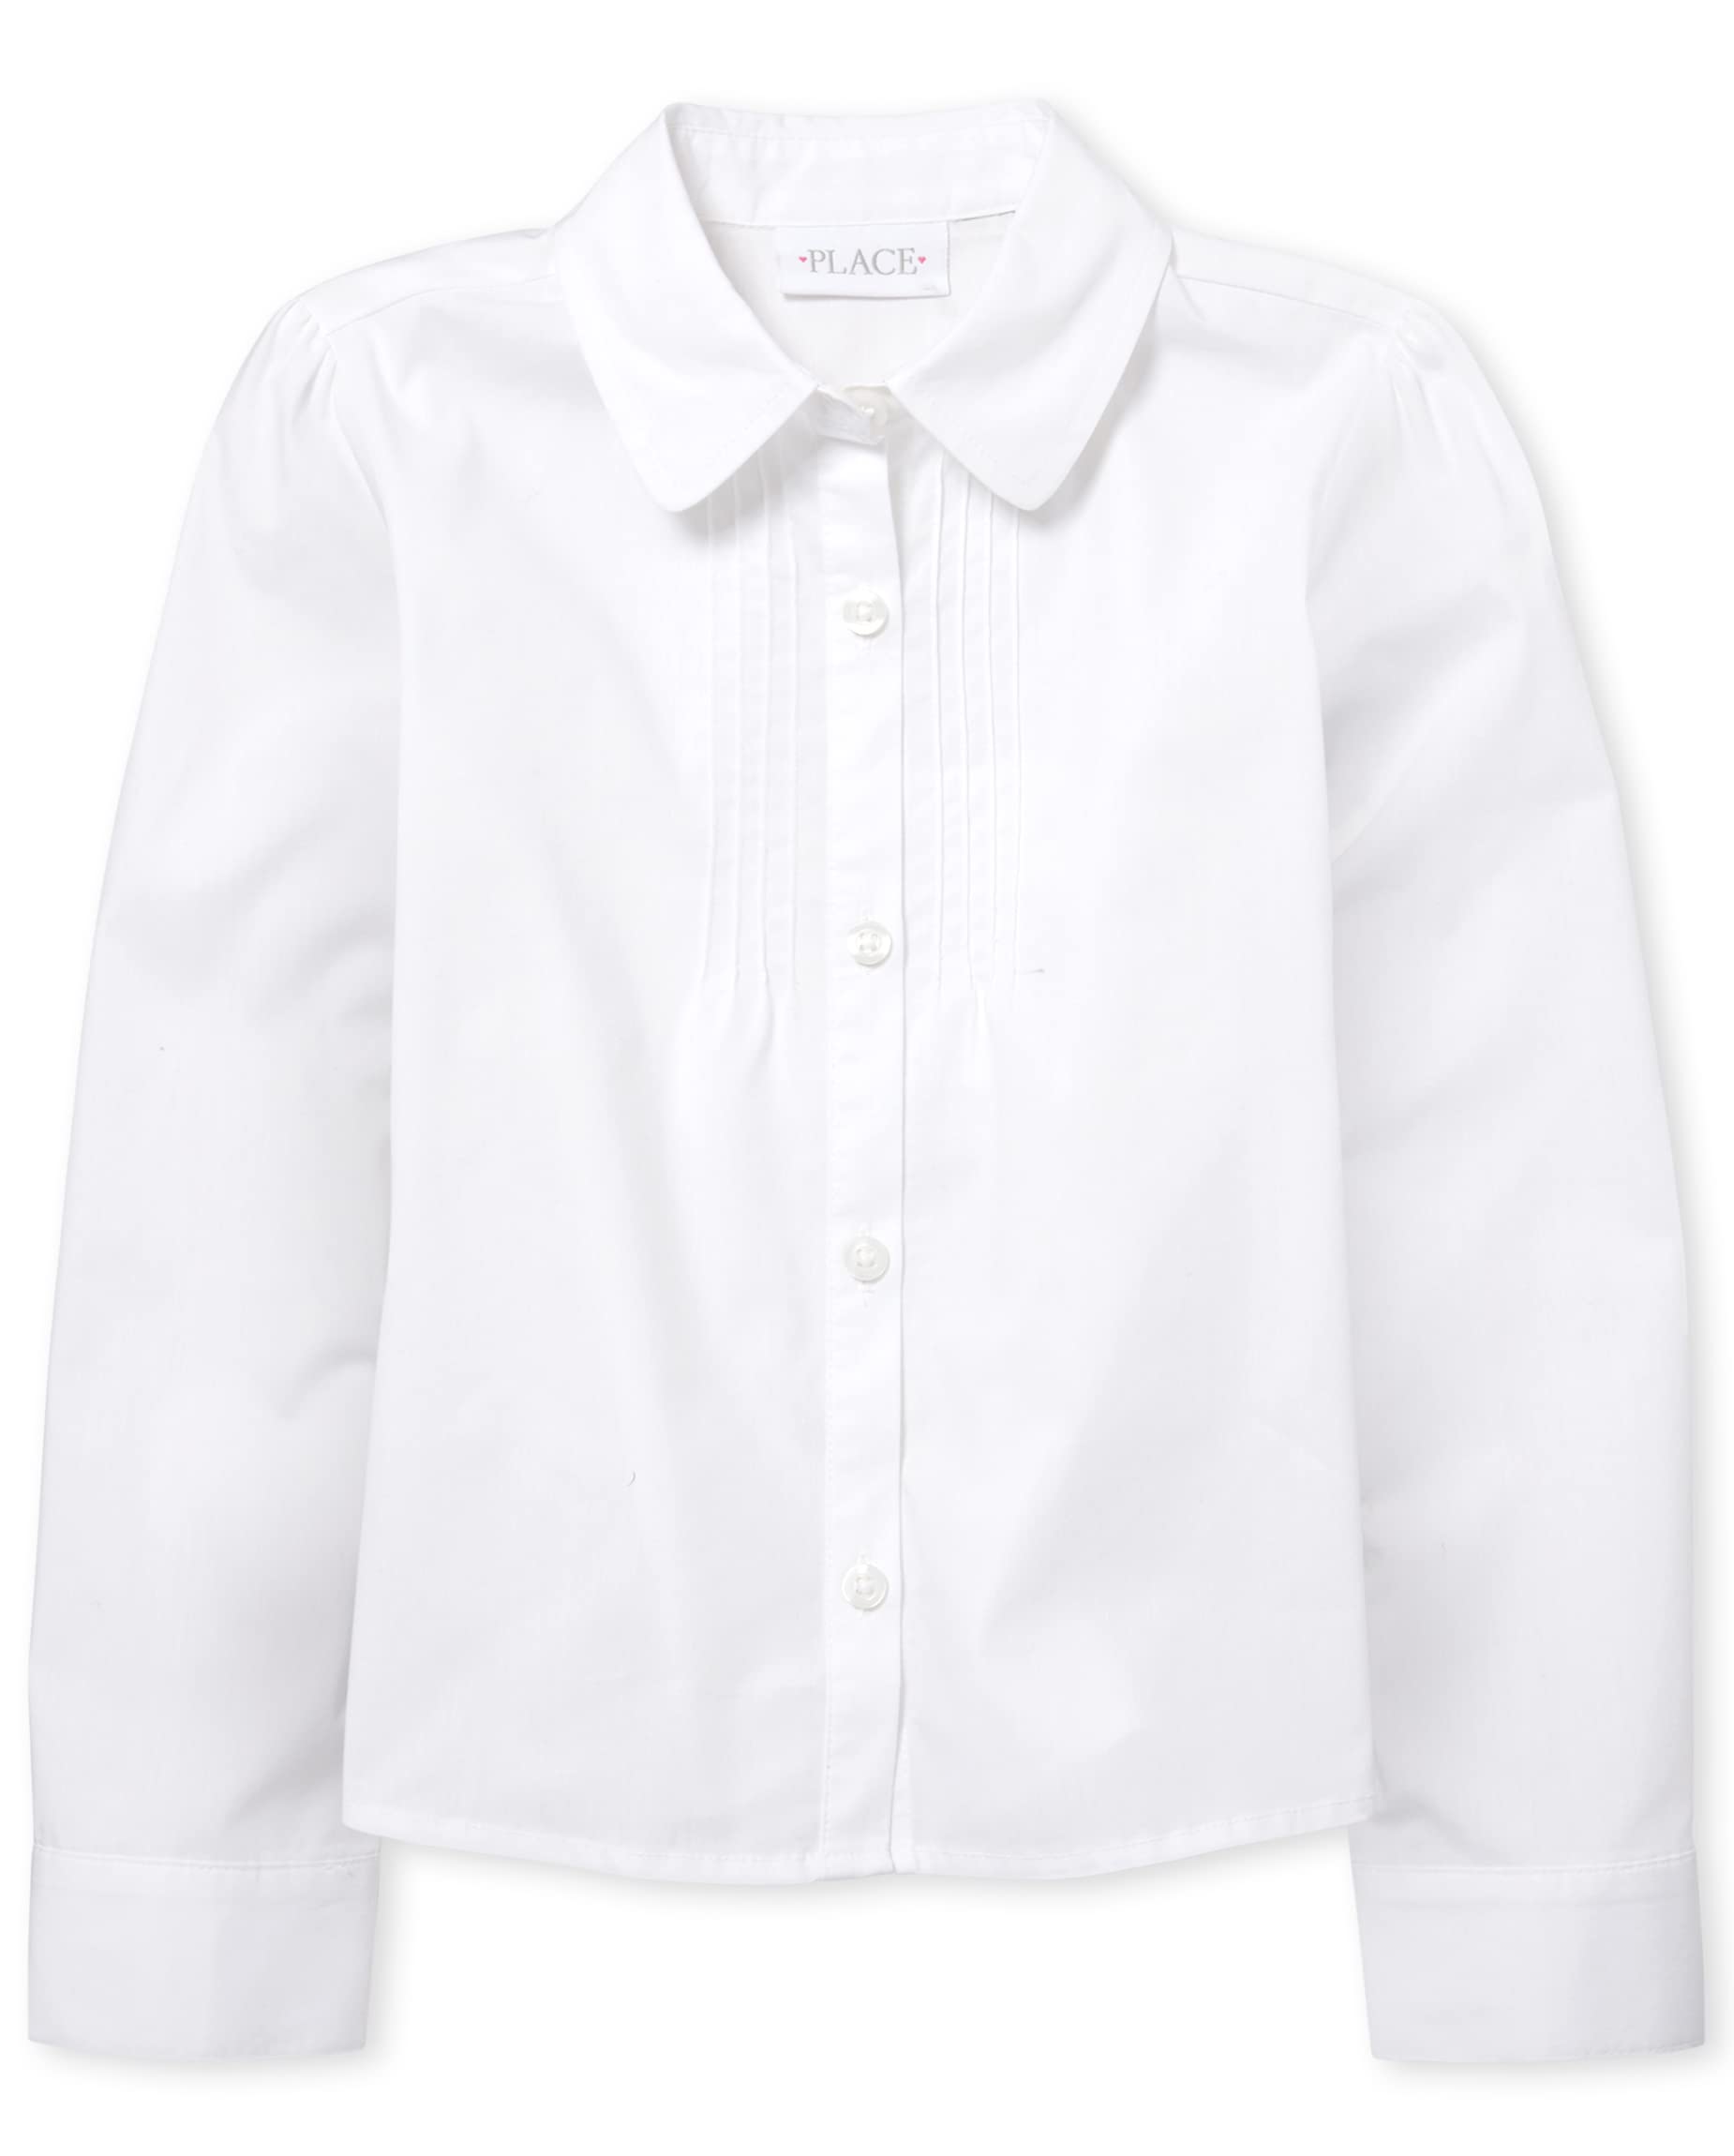 The Children's Place Girls' Long Sleeve Pintuck Poplin Button Down Shirt